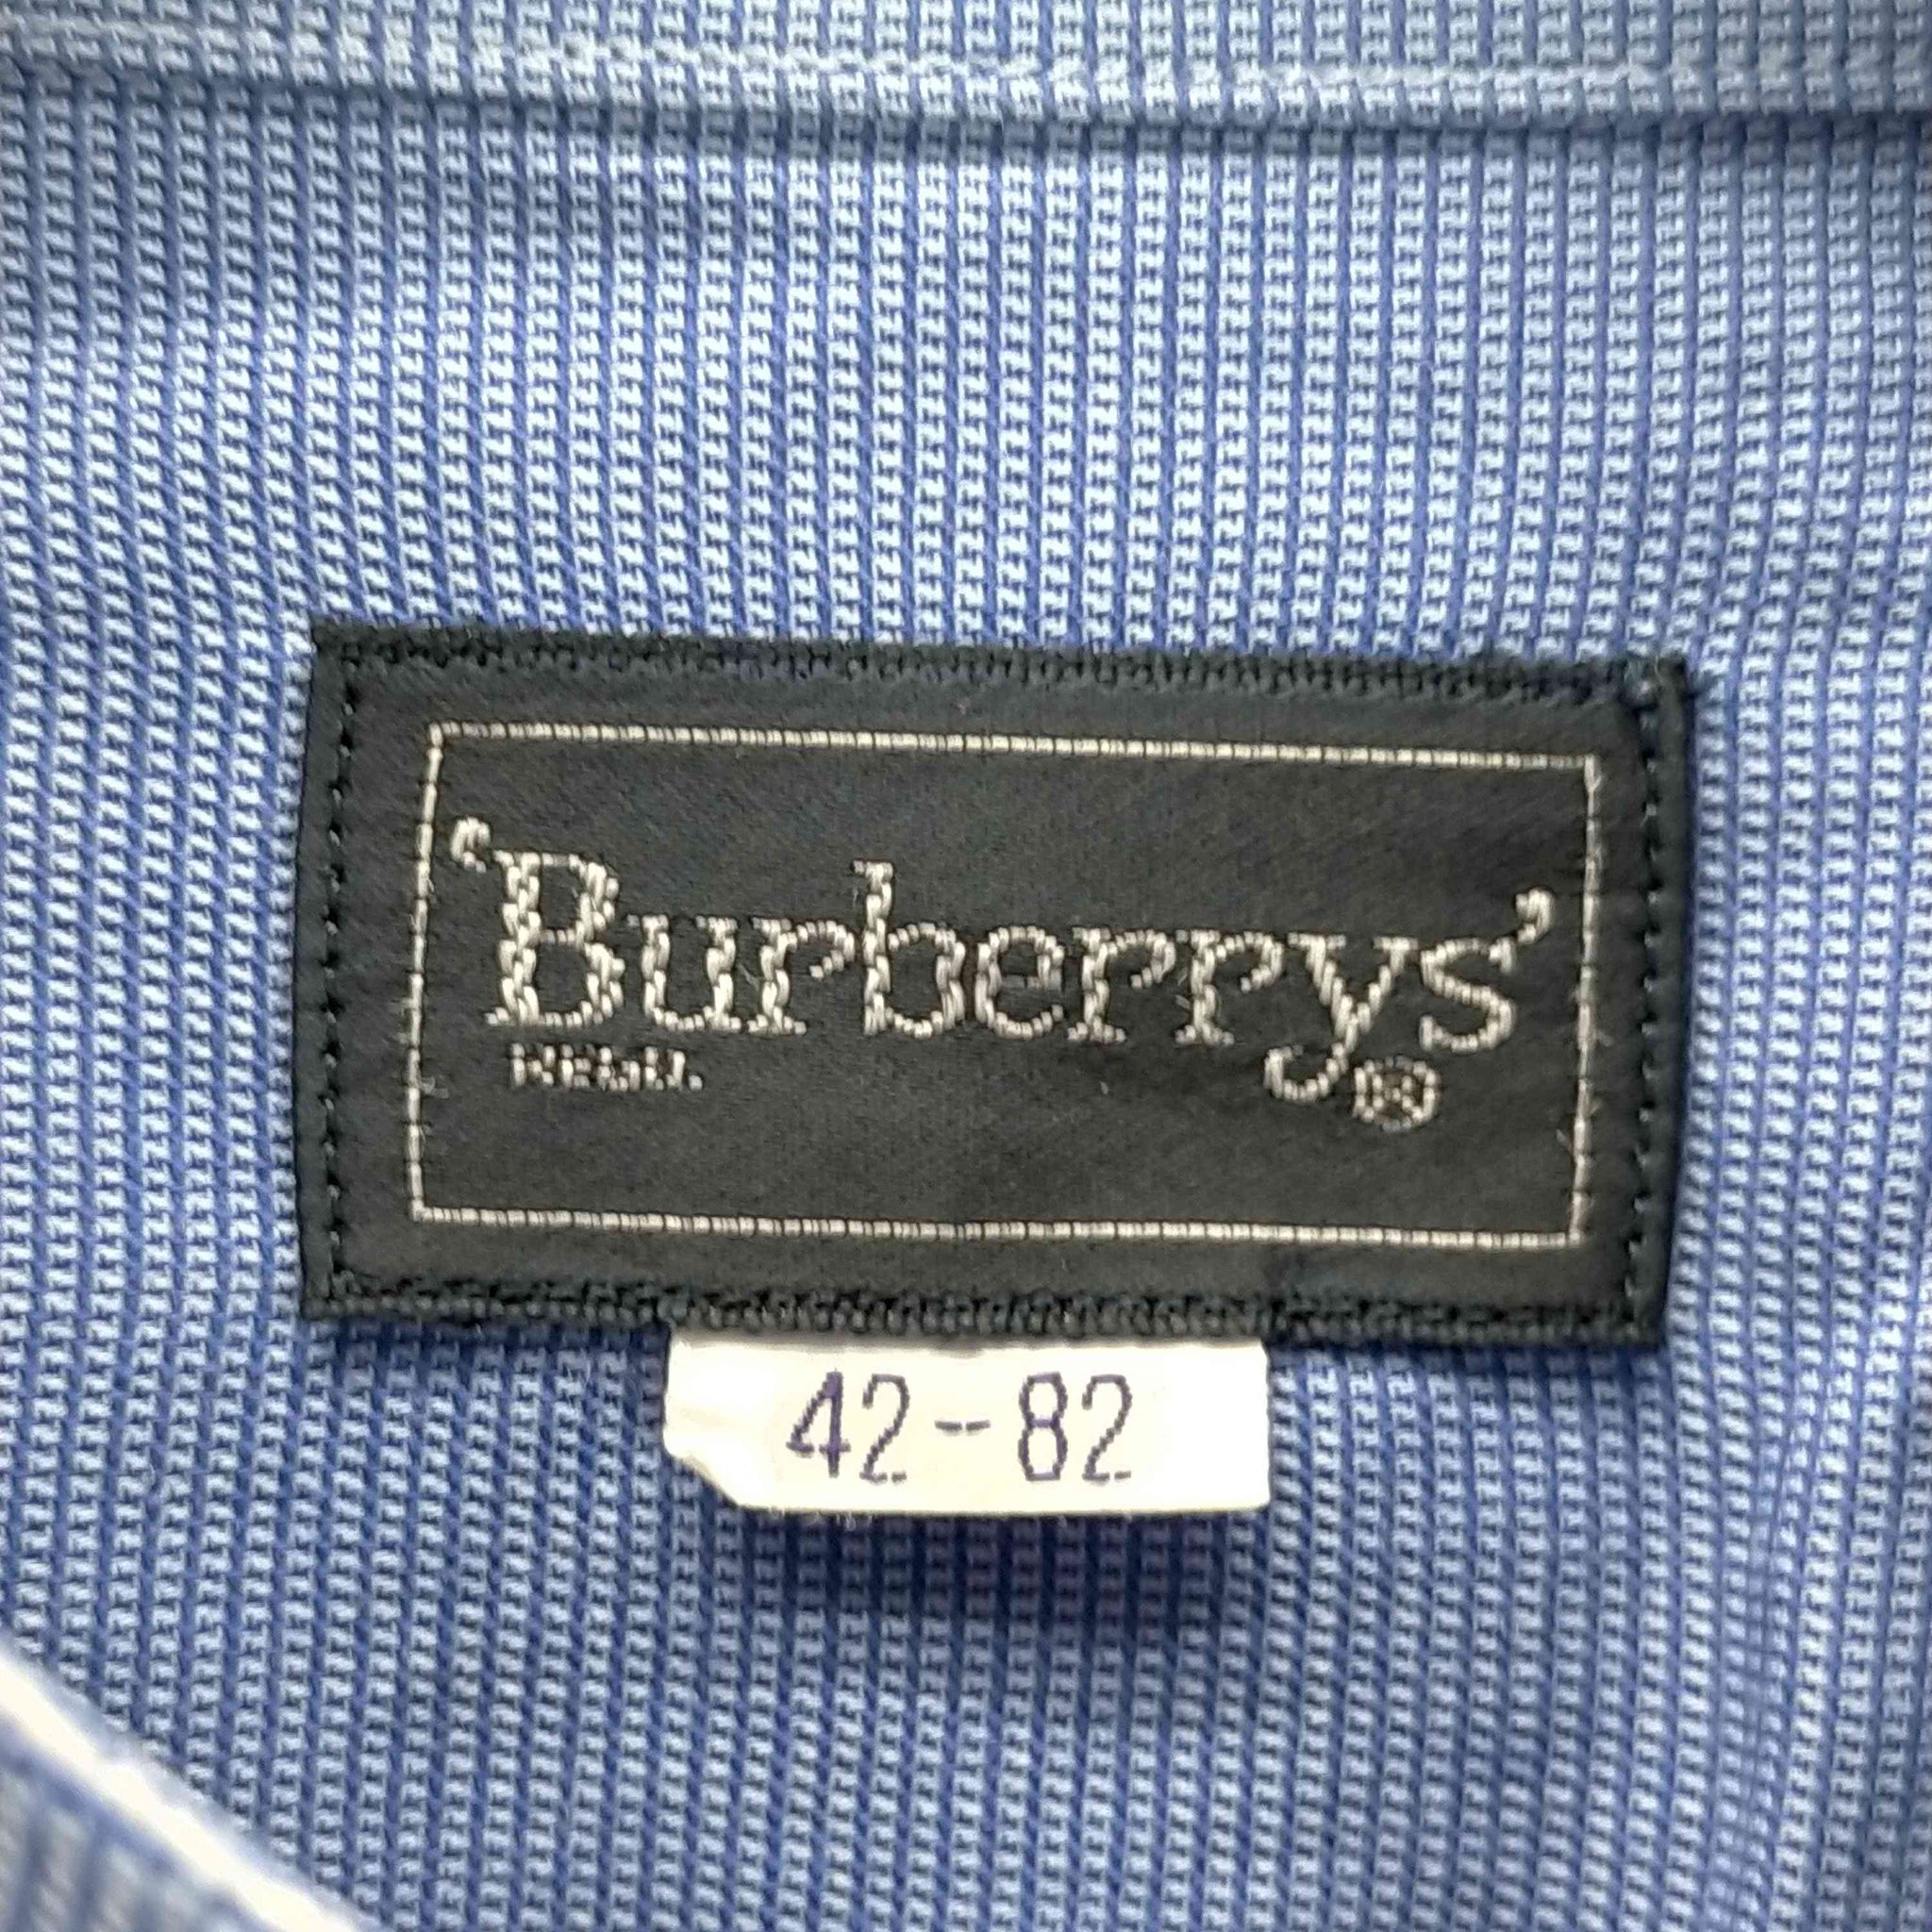 BURBERRYS(バーバリーズ)L/S バンドカラーシャツ